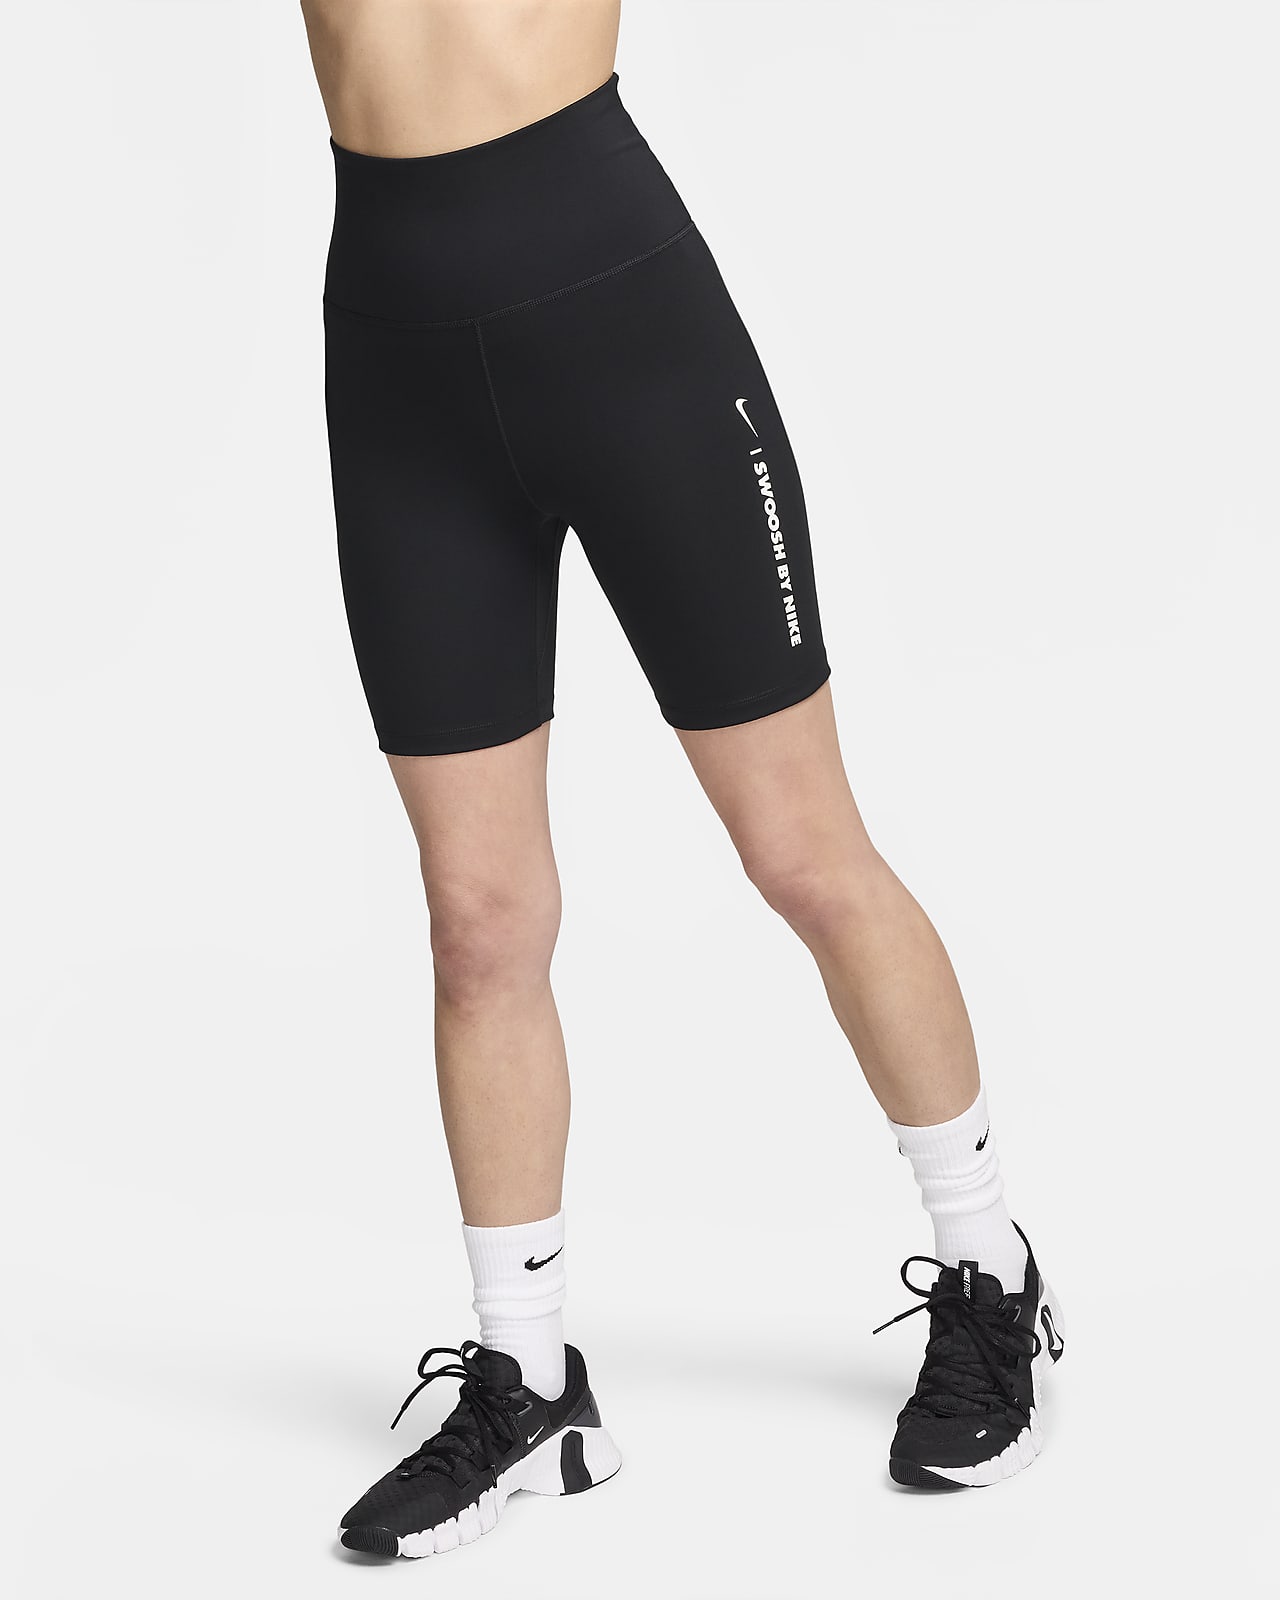 Γυναικείο ψηλόμεσο σορτς ποδηλασίας Nike One 18 cm